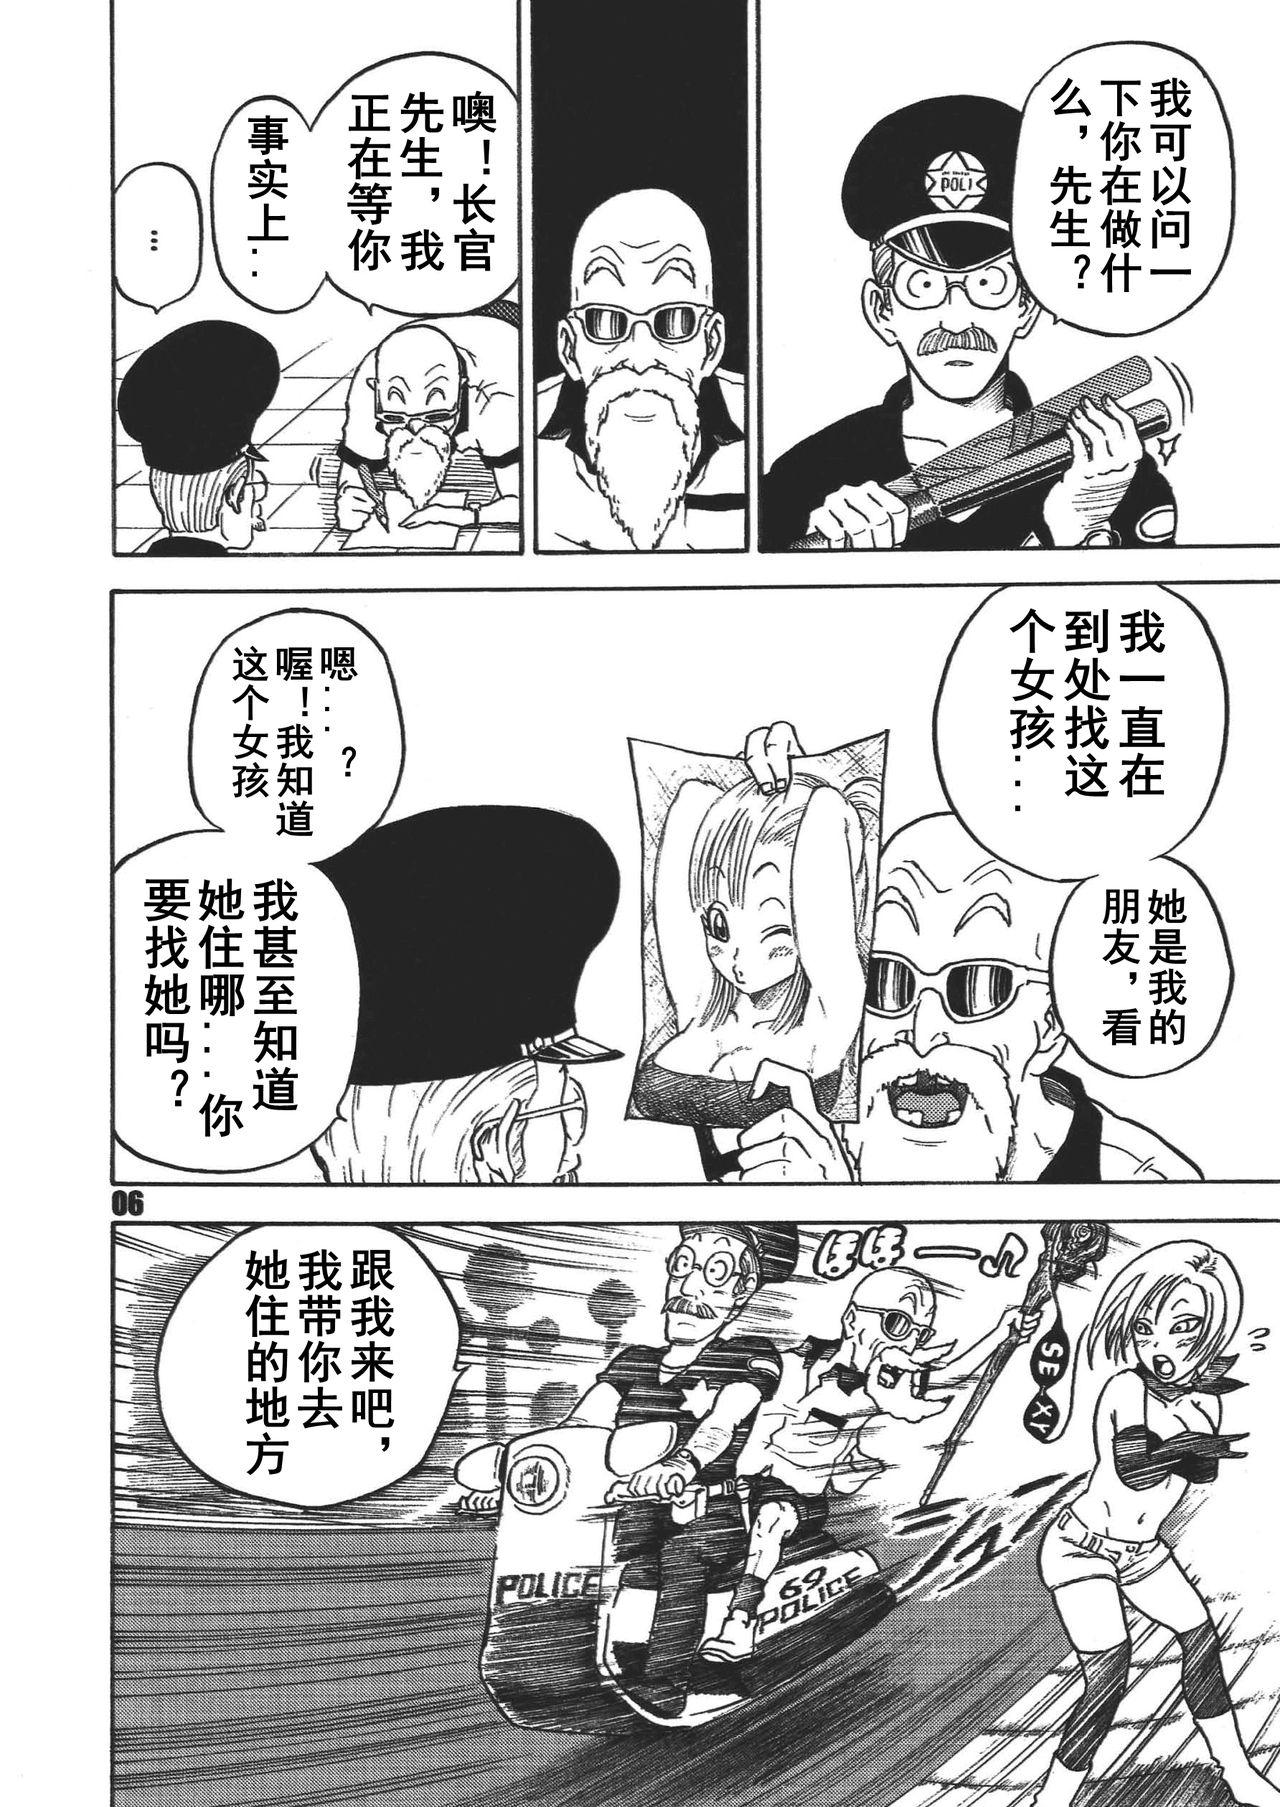 Behind Dangan Ball Maki no Ichi - Nishi no Miyako no Harenchi Jiken - Dragon ball Gritona - Page 5